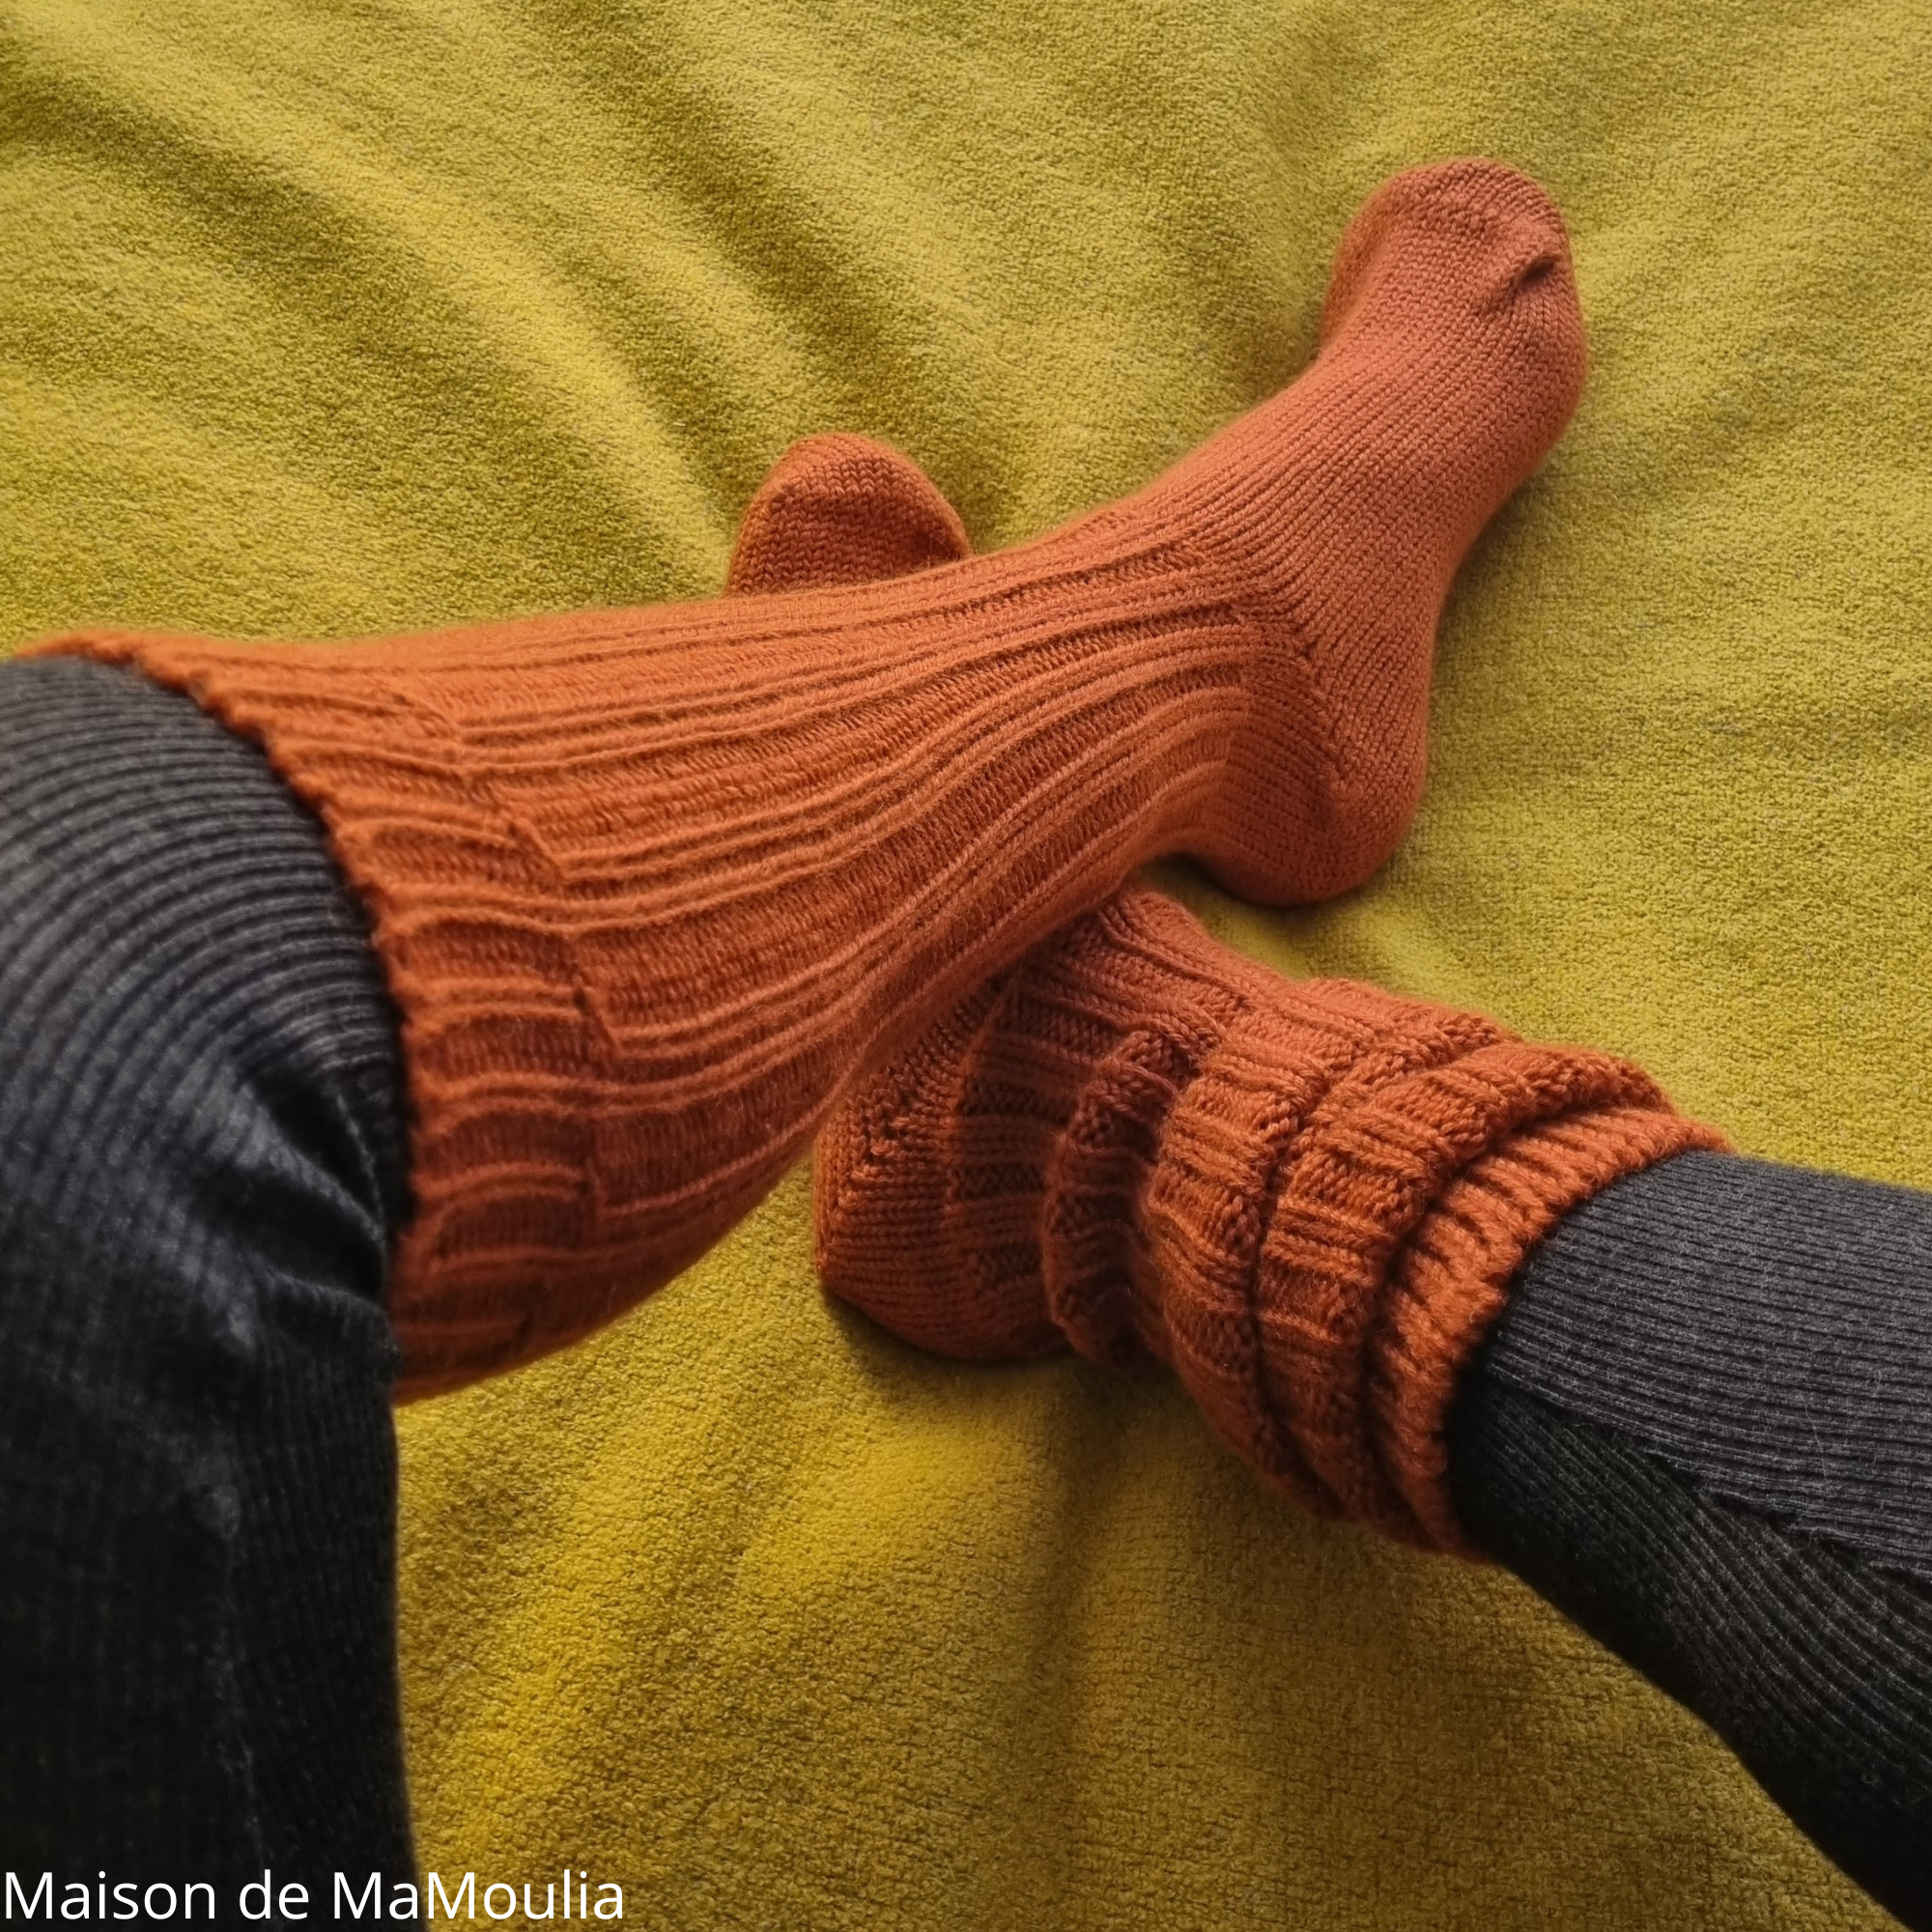 293-chaussettes-mibas-tres-hautes-longues-pure-laine-bio-ecologique-hirsch-natur-maison-de-mamoulia-adulte-terracotta-terrecuite-legging